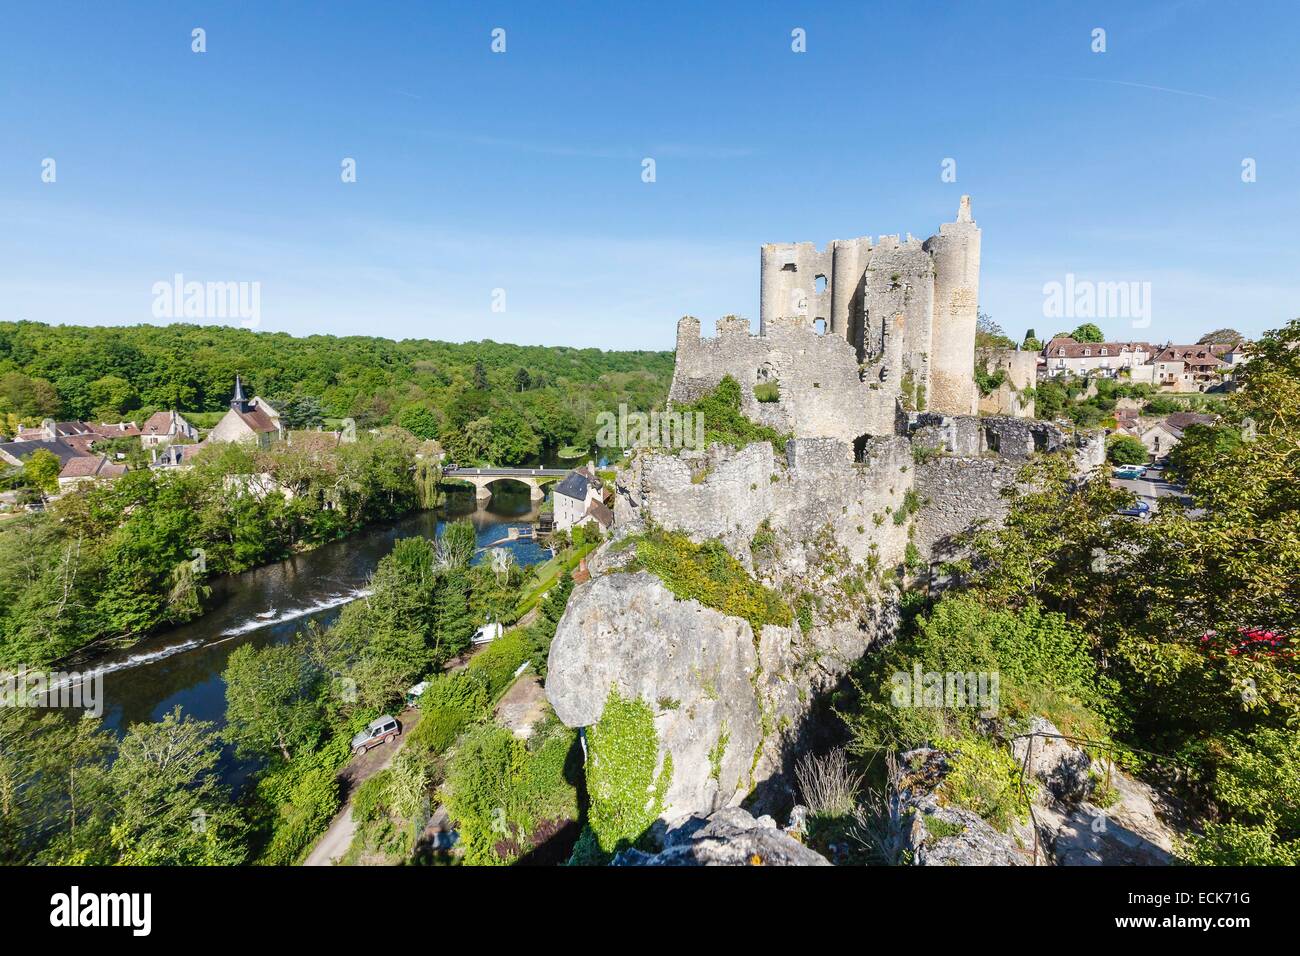 France, Vienne, Angles sur l'Anglin, labelled Les Plus Beaux Villages de France (The MoSaint Beautiful Villages of France), the castle near l'Anglin river Stock Photo